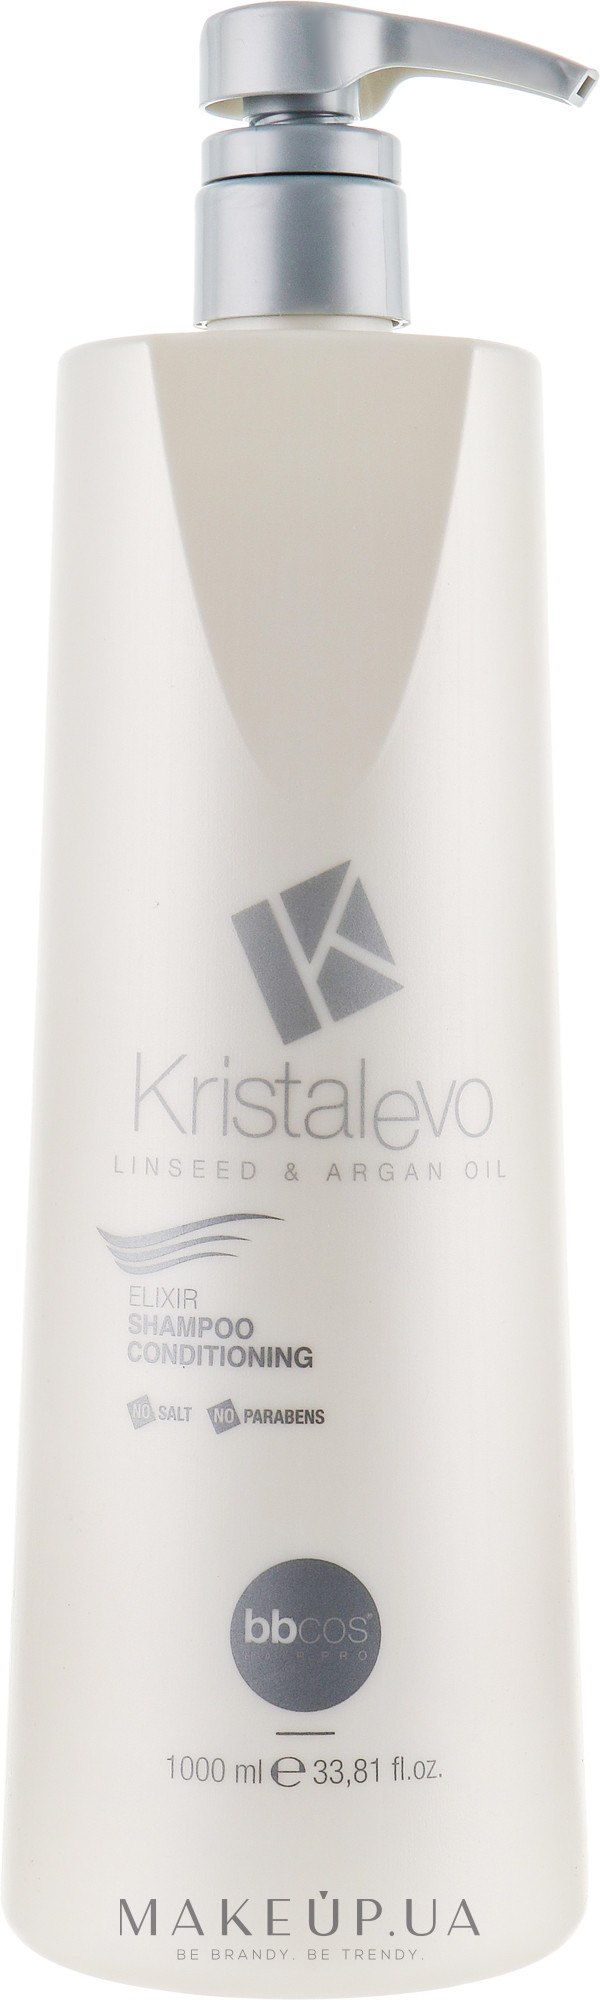 Шампунь-эликсир для волос - Bbcos Kristal Evo Elixir Shampoo Conditioning — фото 1000ml